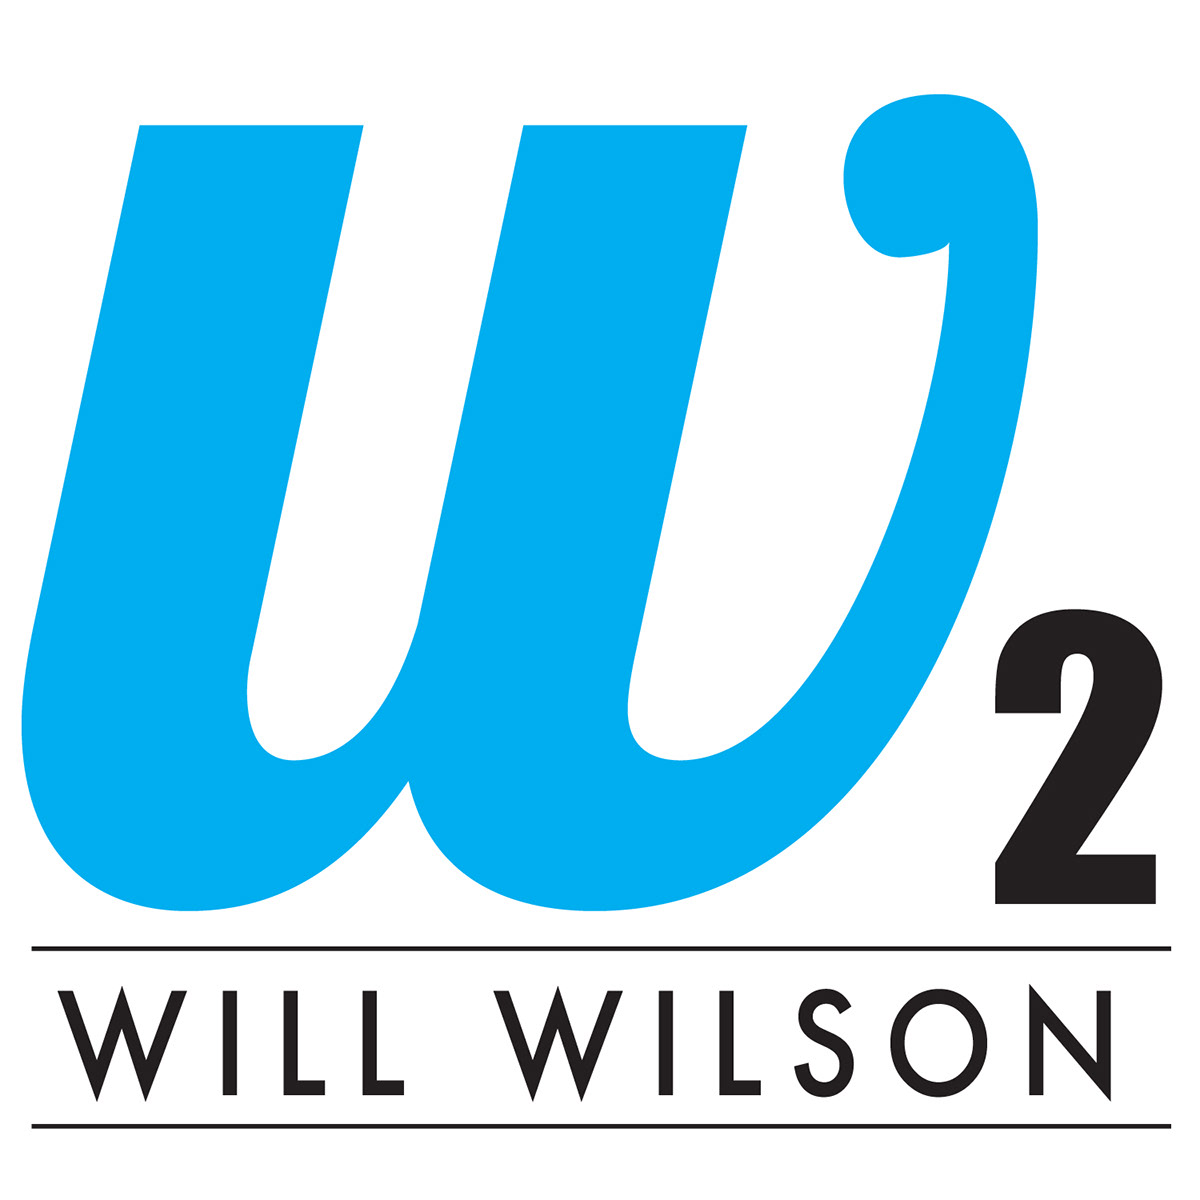 will wilson william will wilson William Wilson Resume